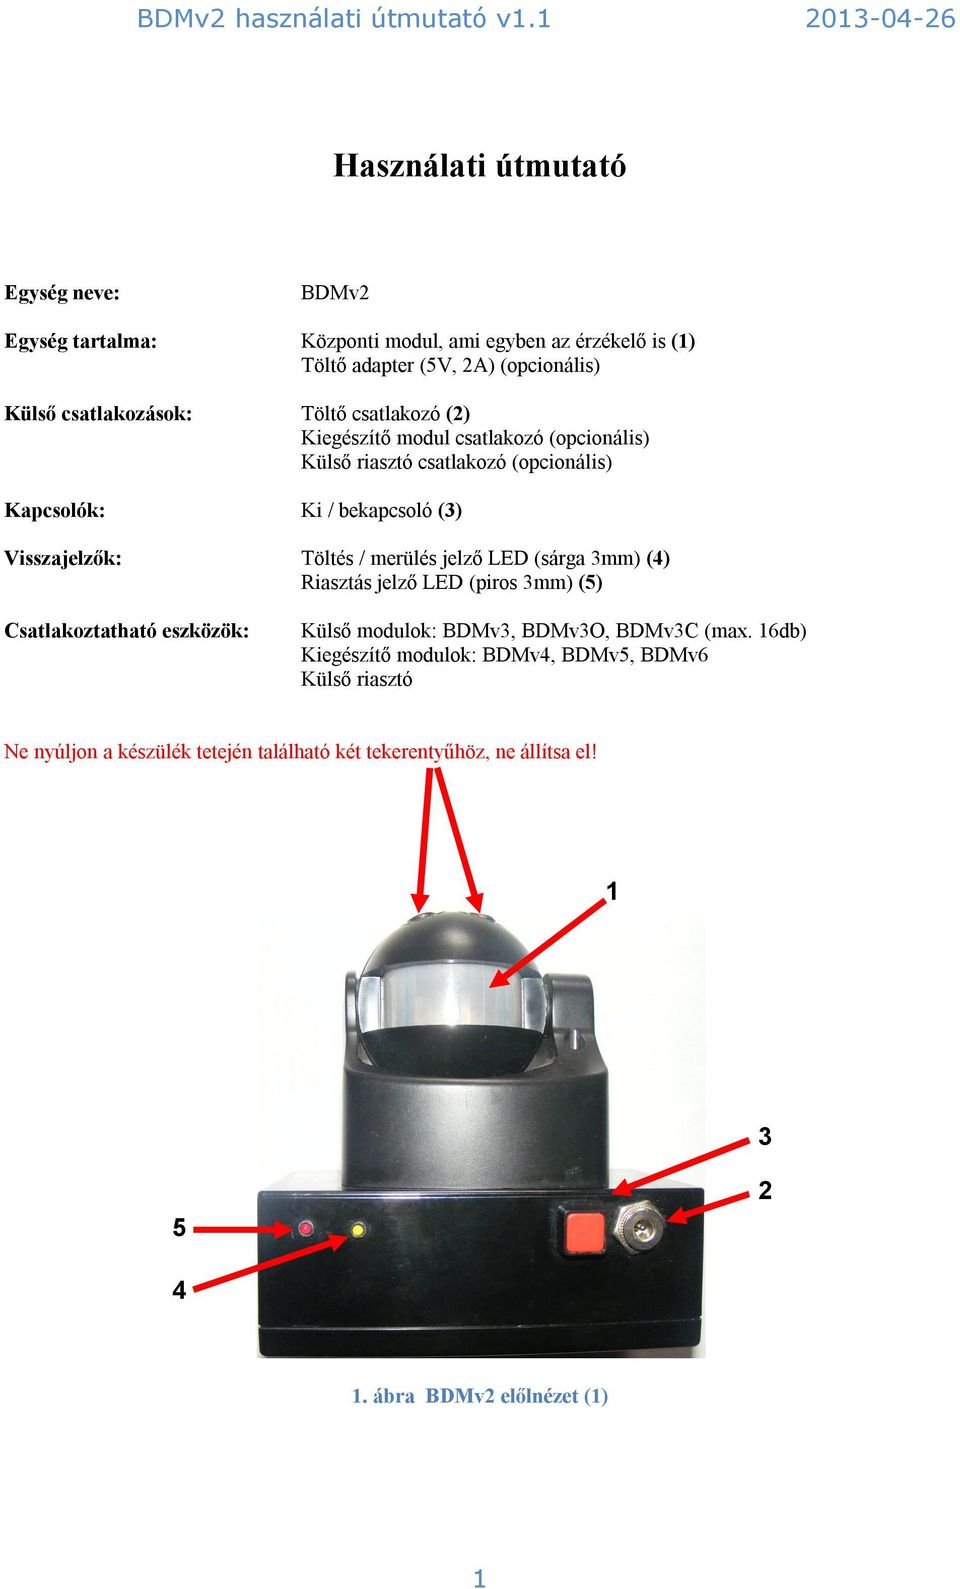 Visszajelzők: Töltés / merülés jelző LED (sárga 3mm) (4) Riasztás jelző LED (piros 3mm) (5) Csatlakoztatható eszközök: Külső modulok: BDMv3, BDMv3O, BDMv3C